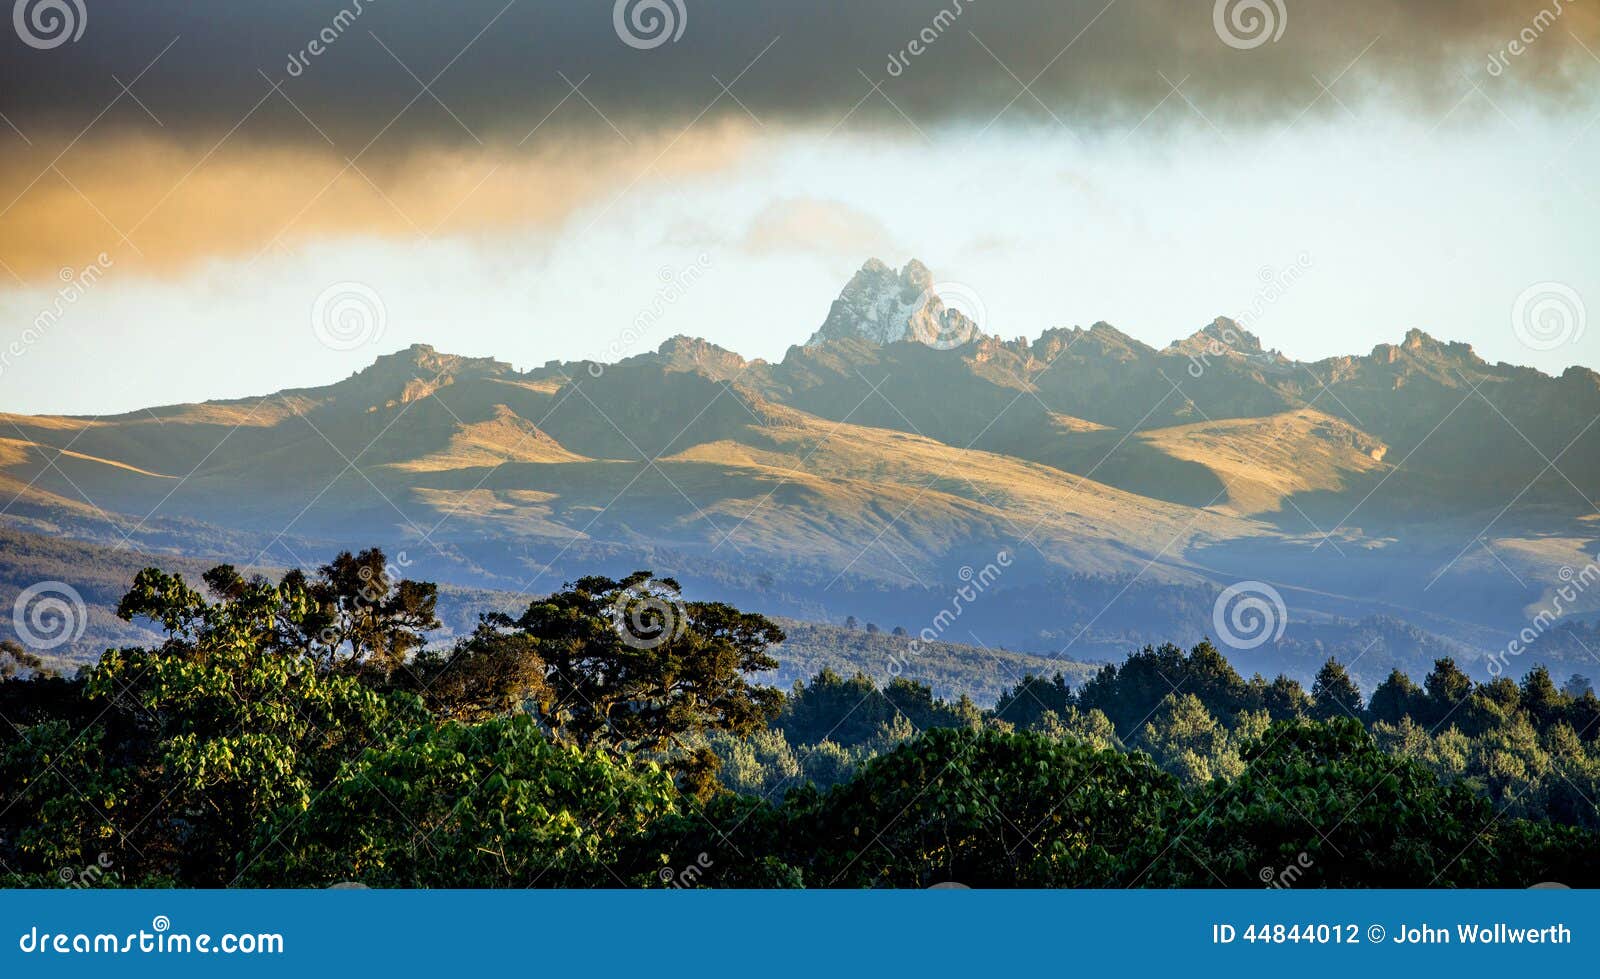 panorama of mount kenya